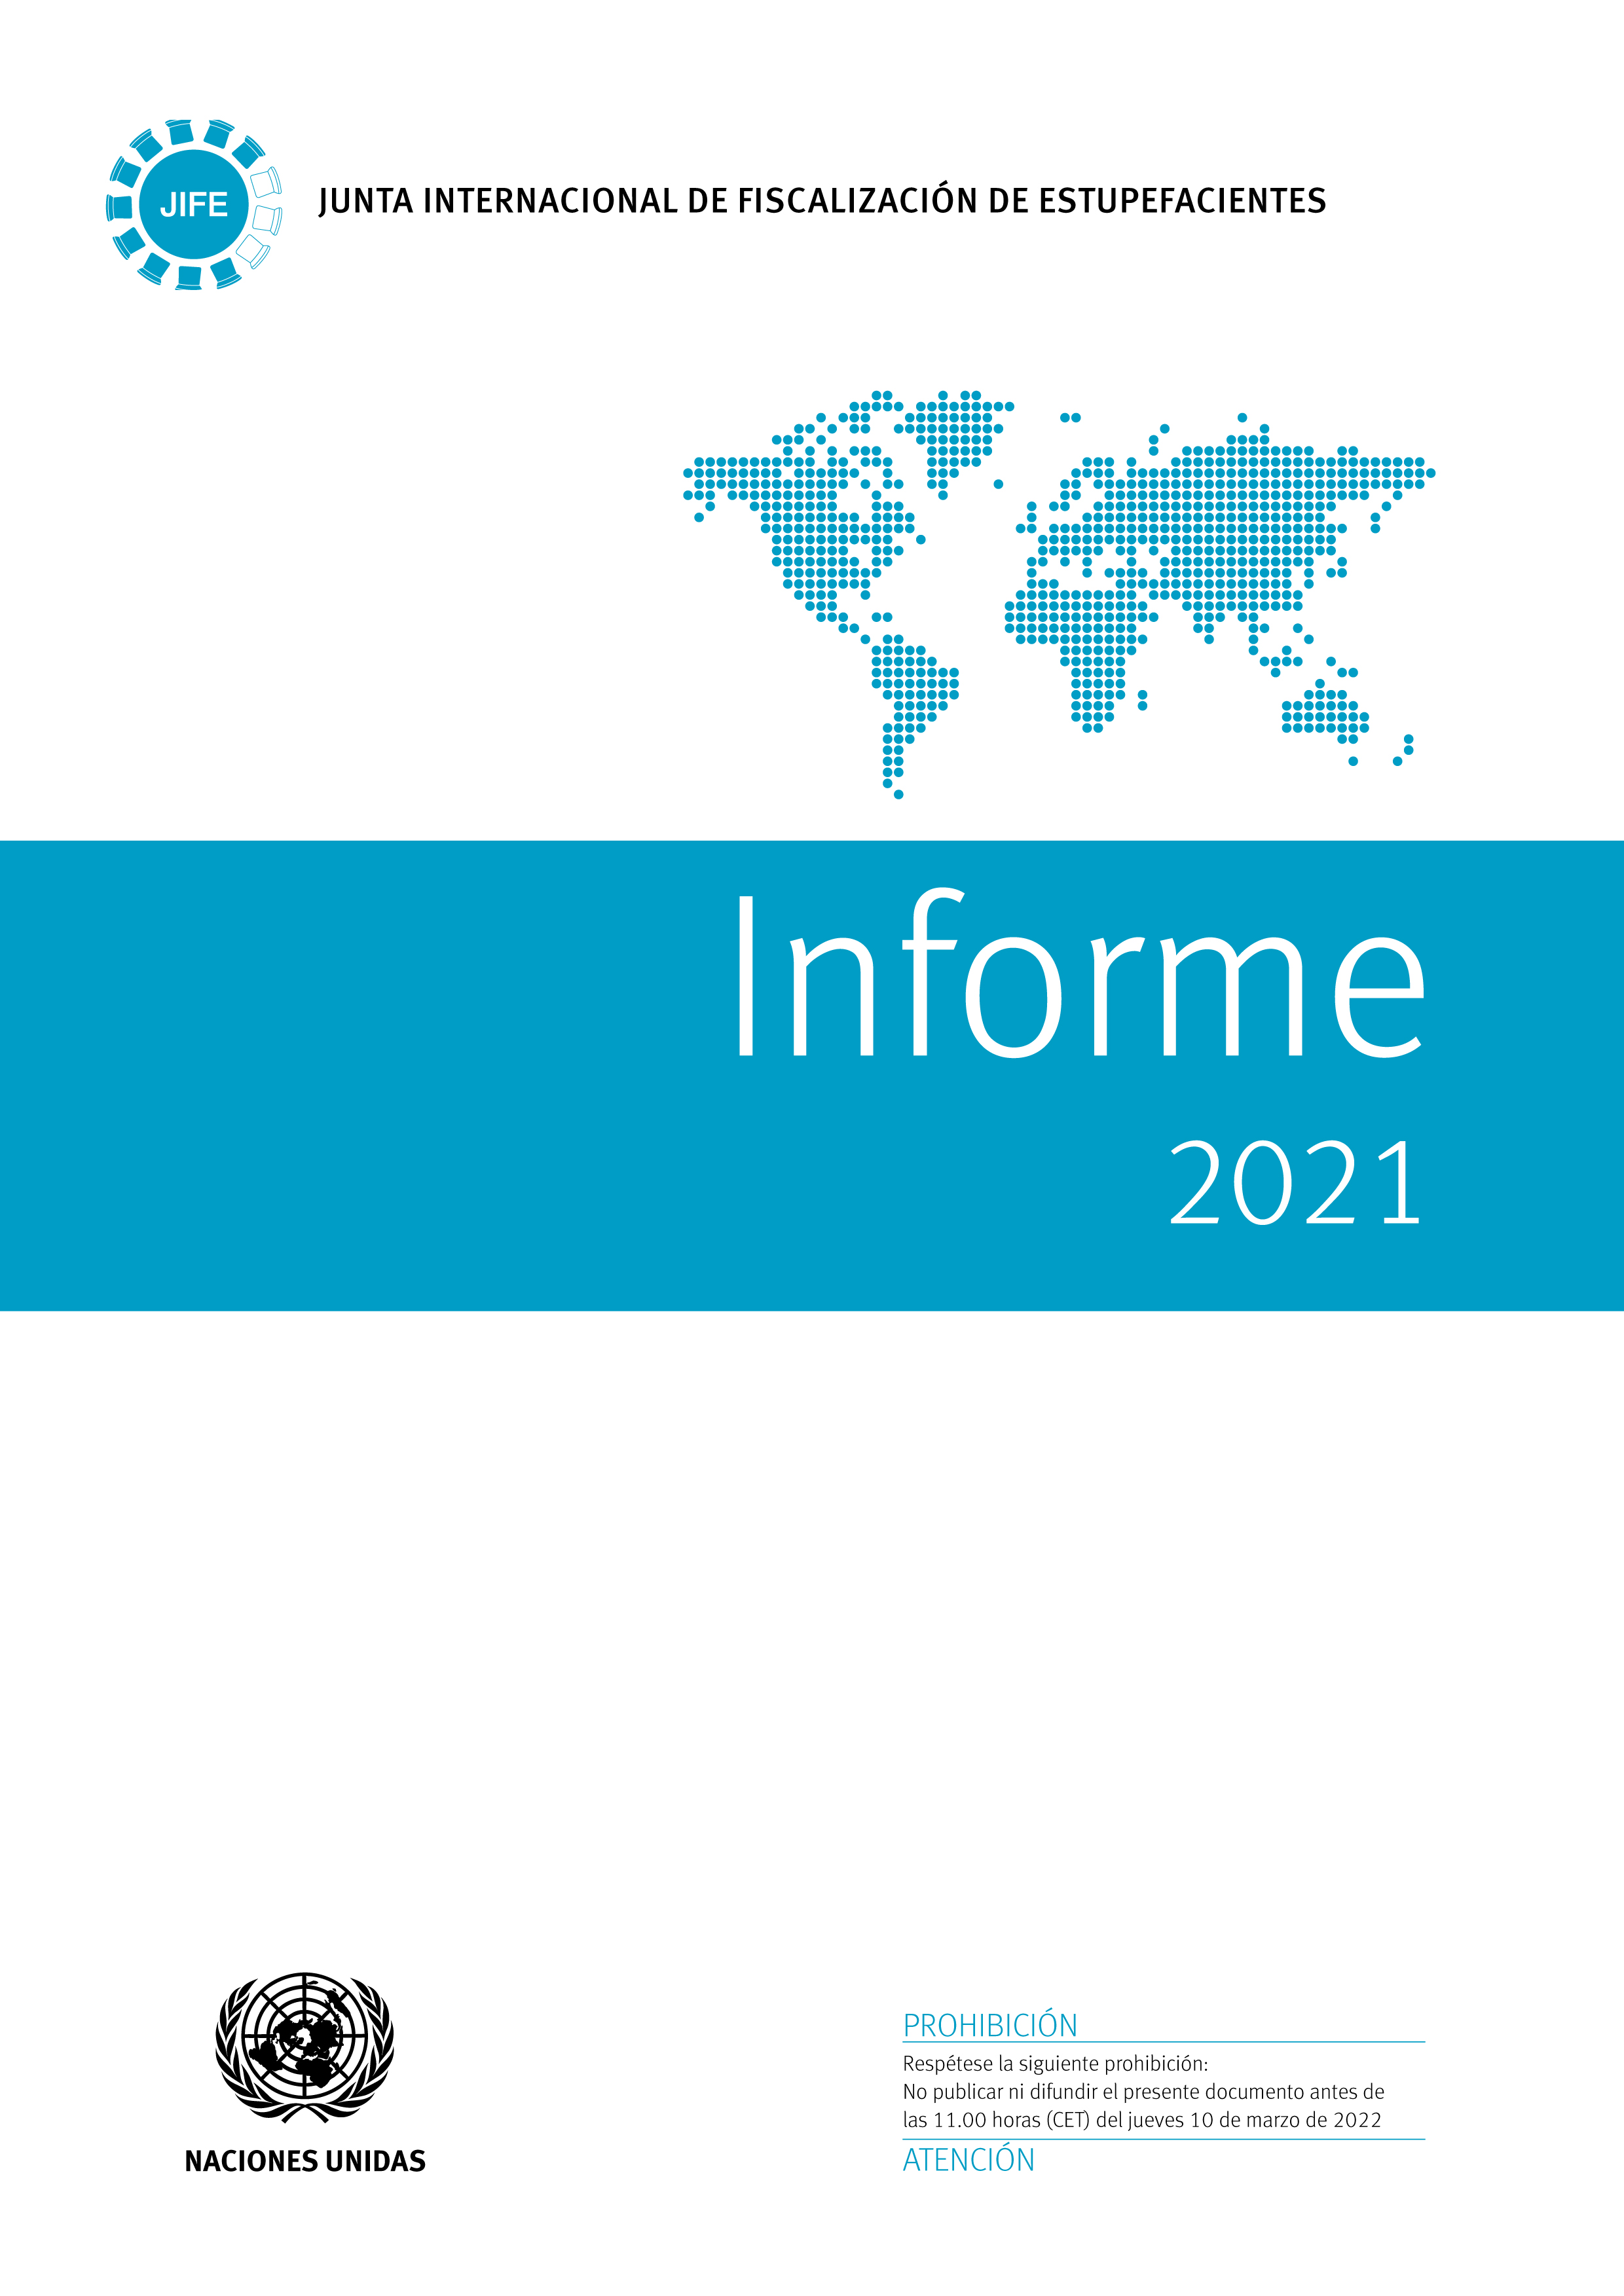 image of Informe de la Junta Internacional de Fiscalización de Estupefacientes correspondiente a 2021